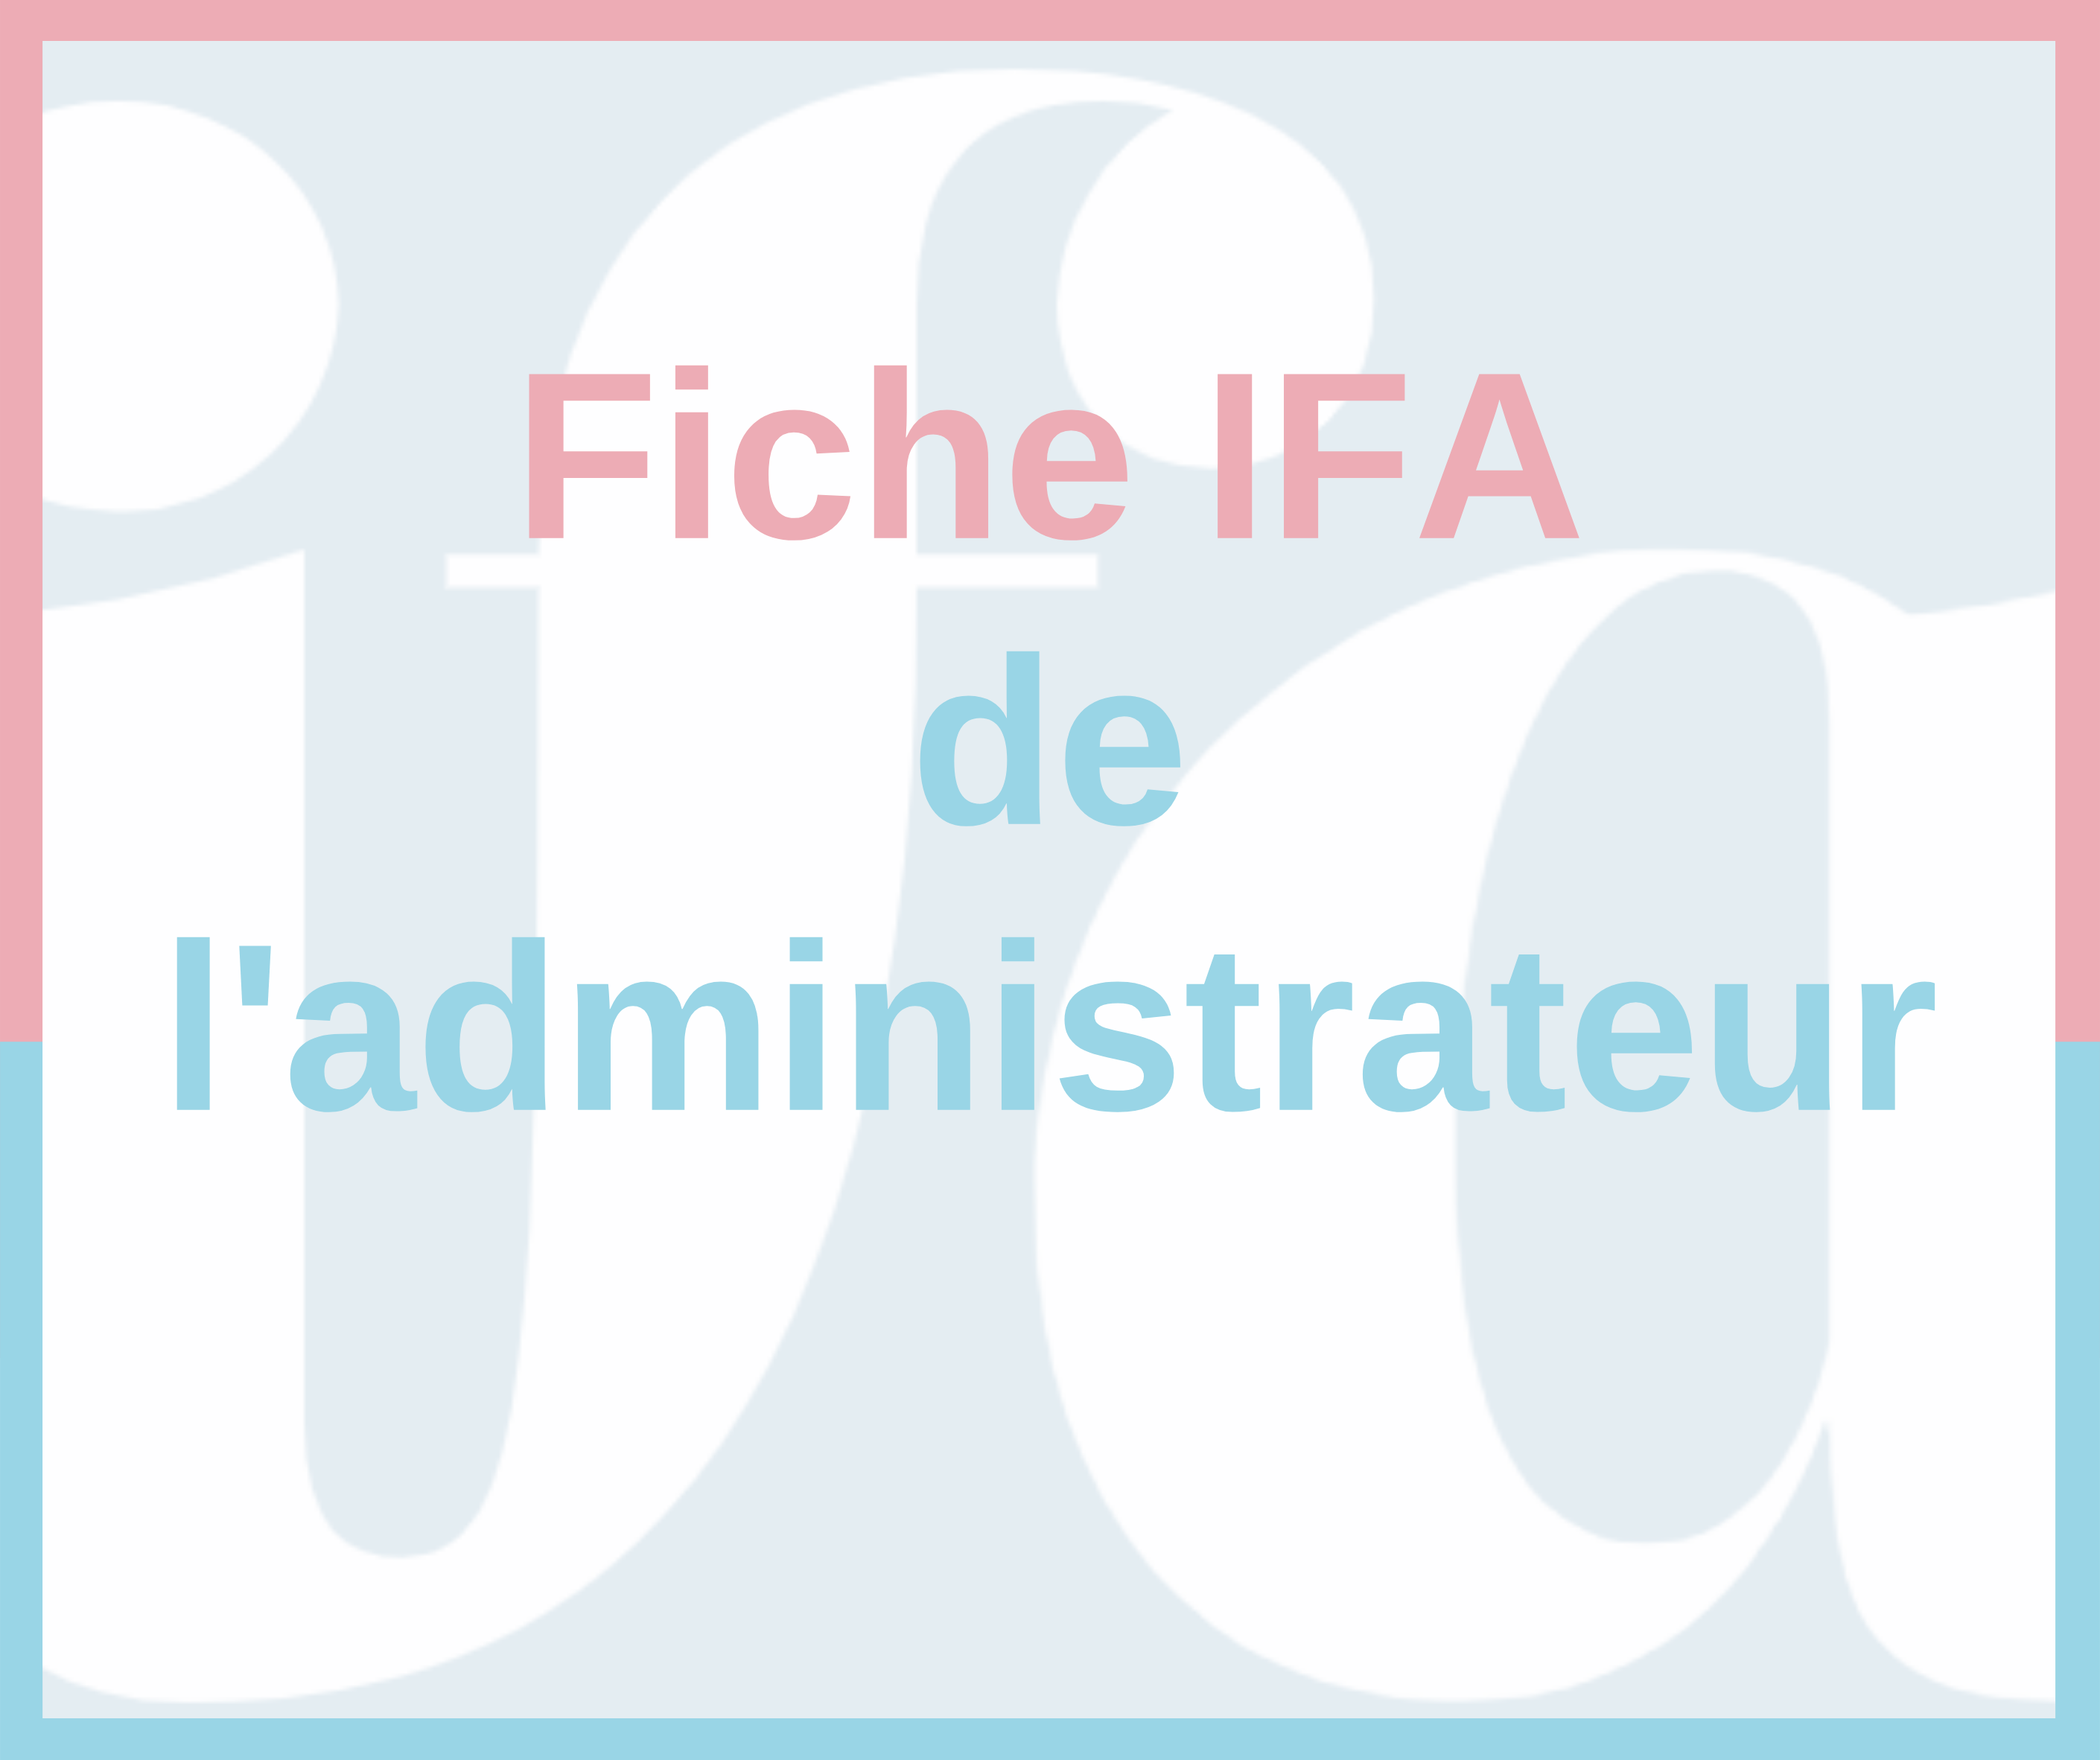 Fiche IFA de l'administrateur - Synthèse du rapport HCGE 2021